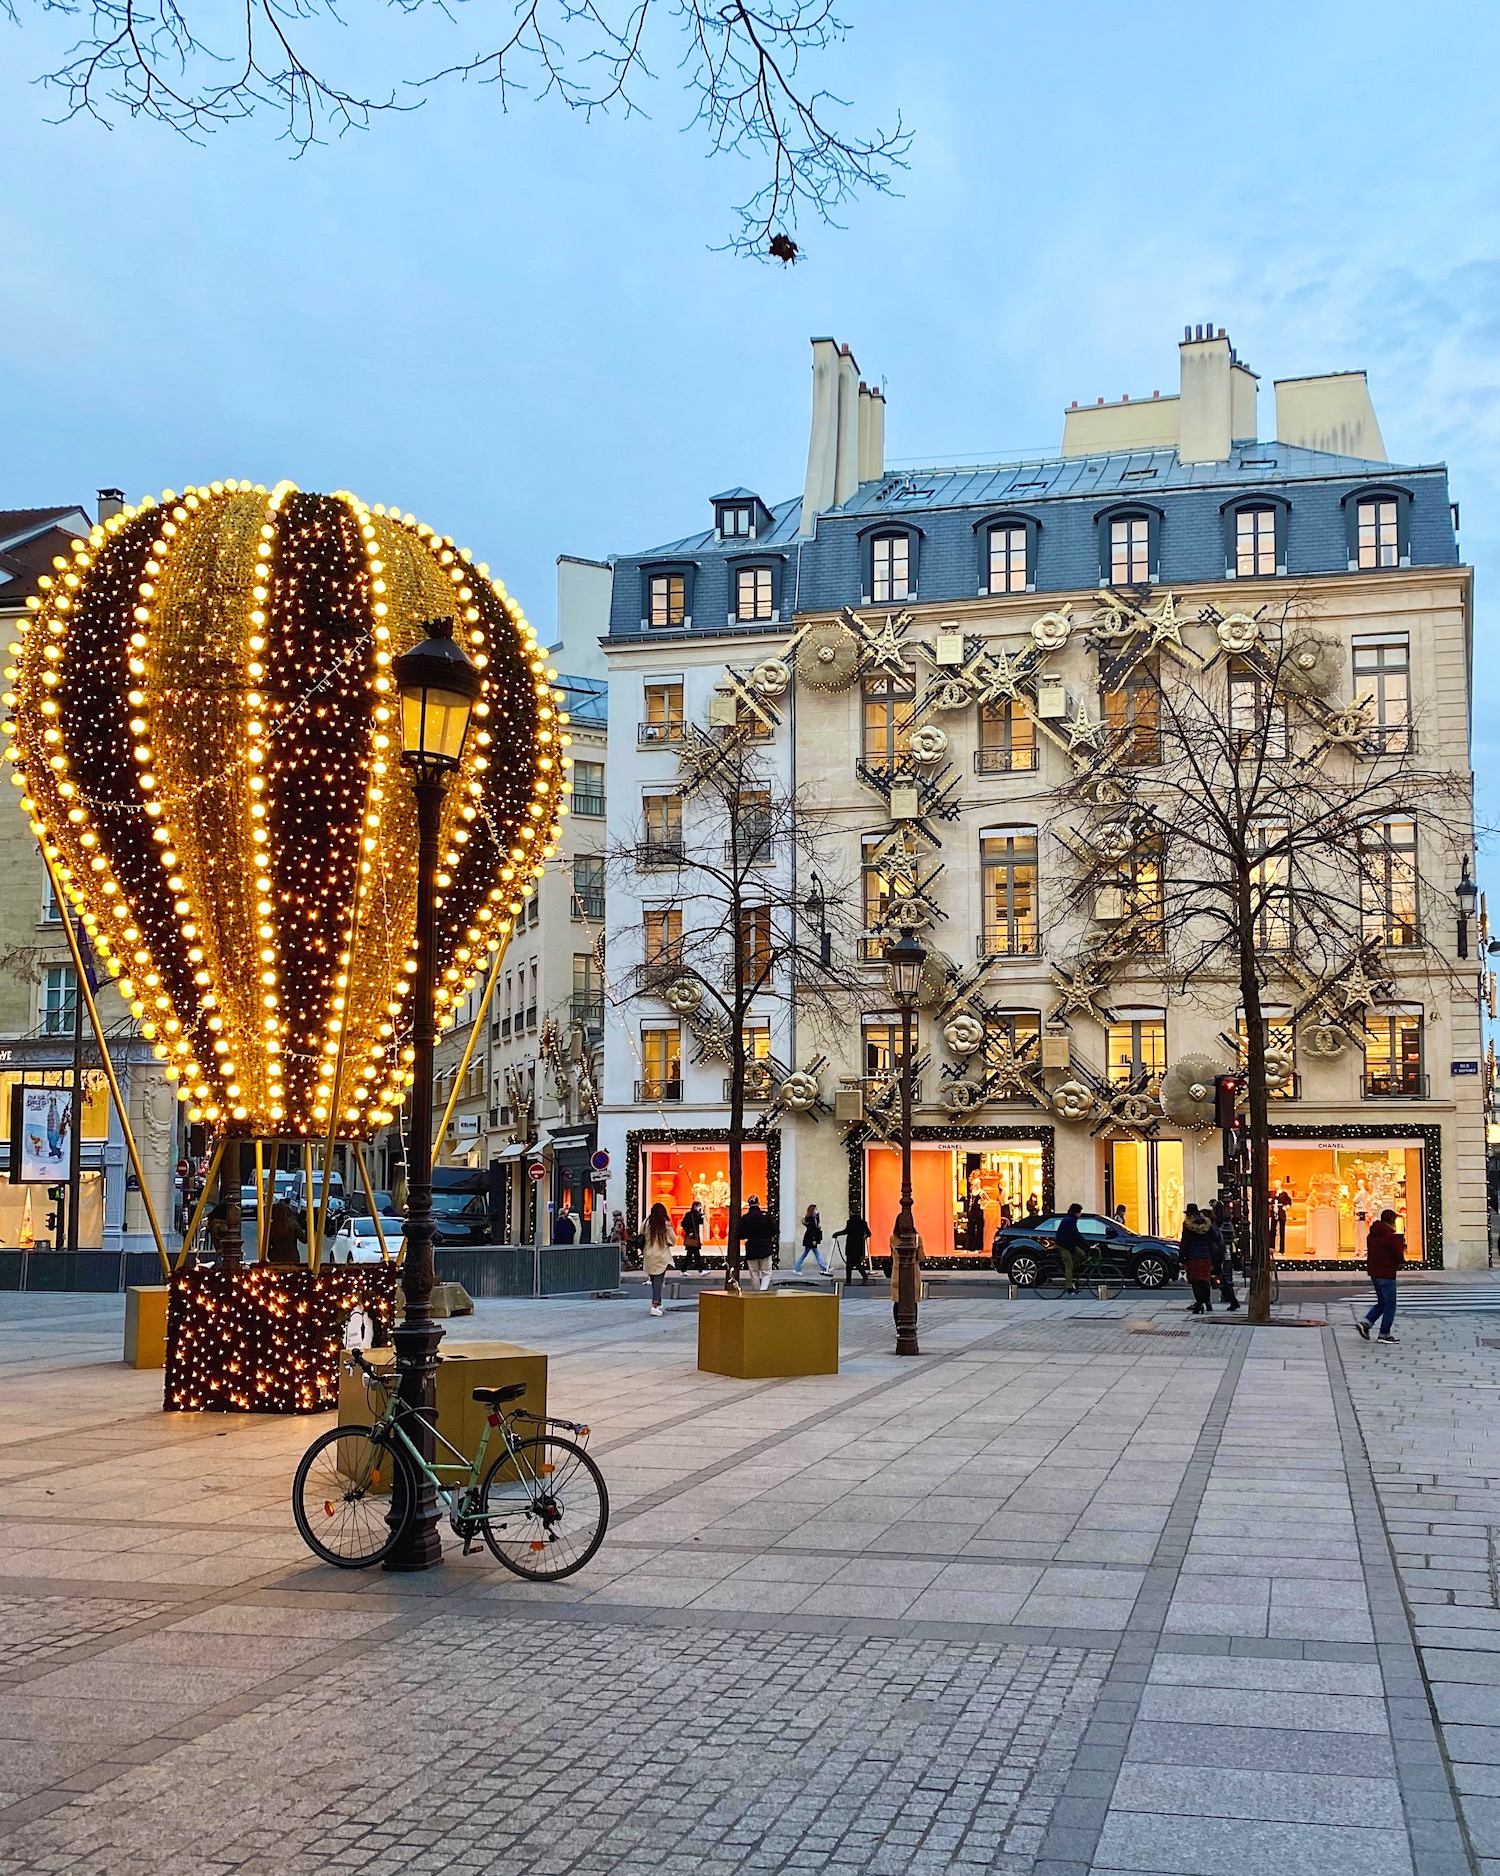 rue saint-honoré decorations 2020